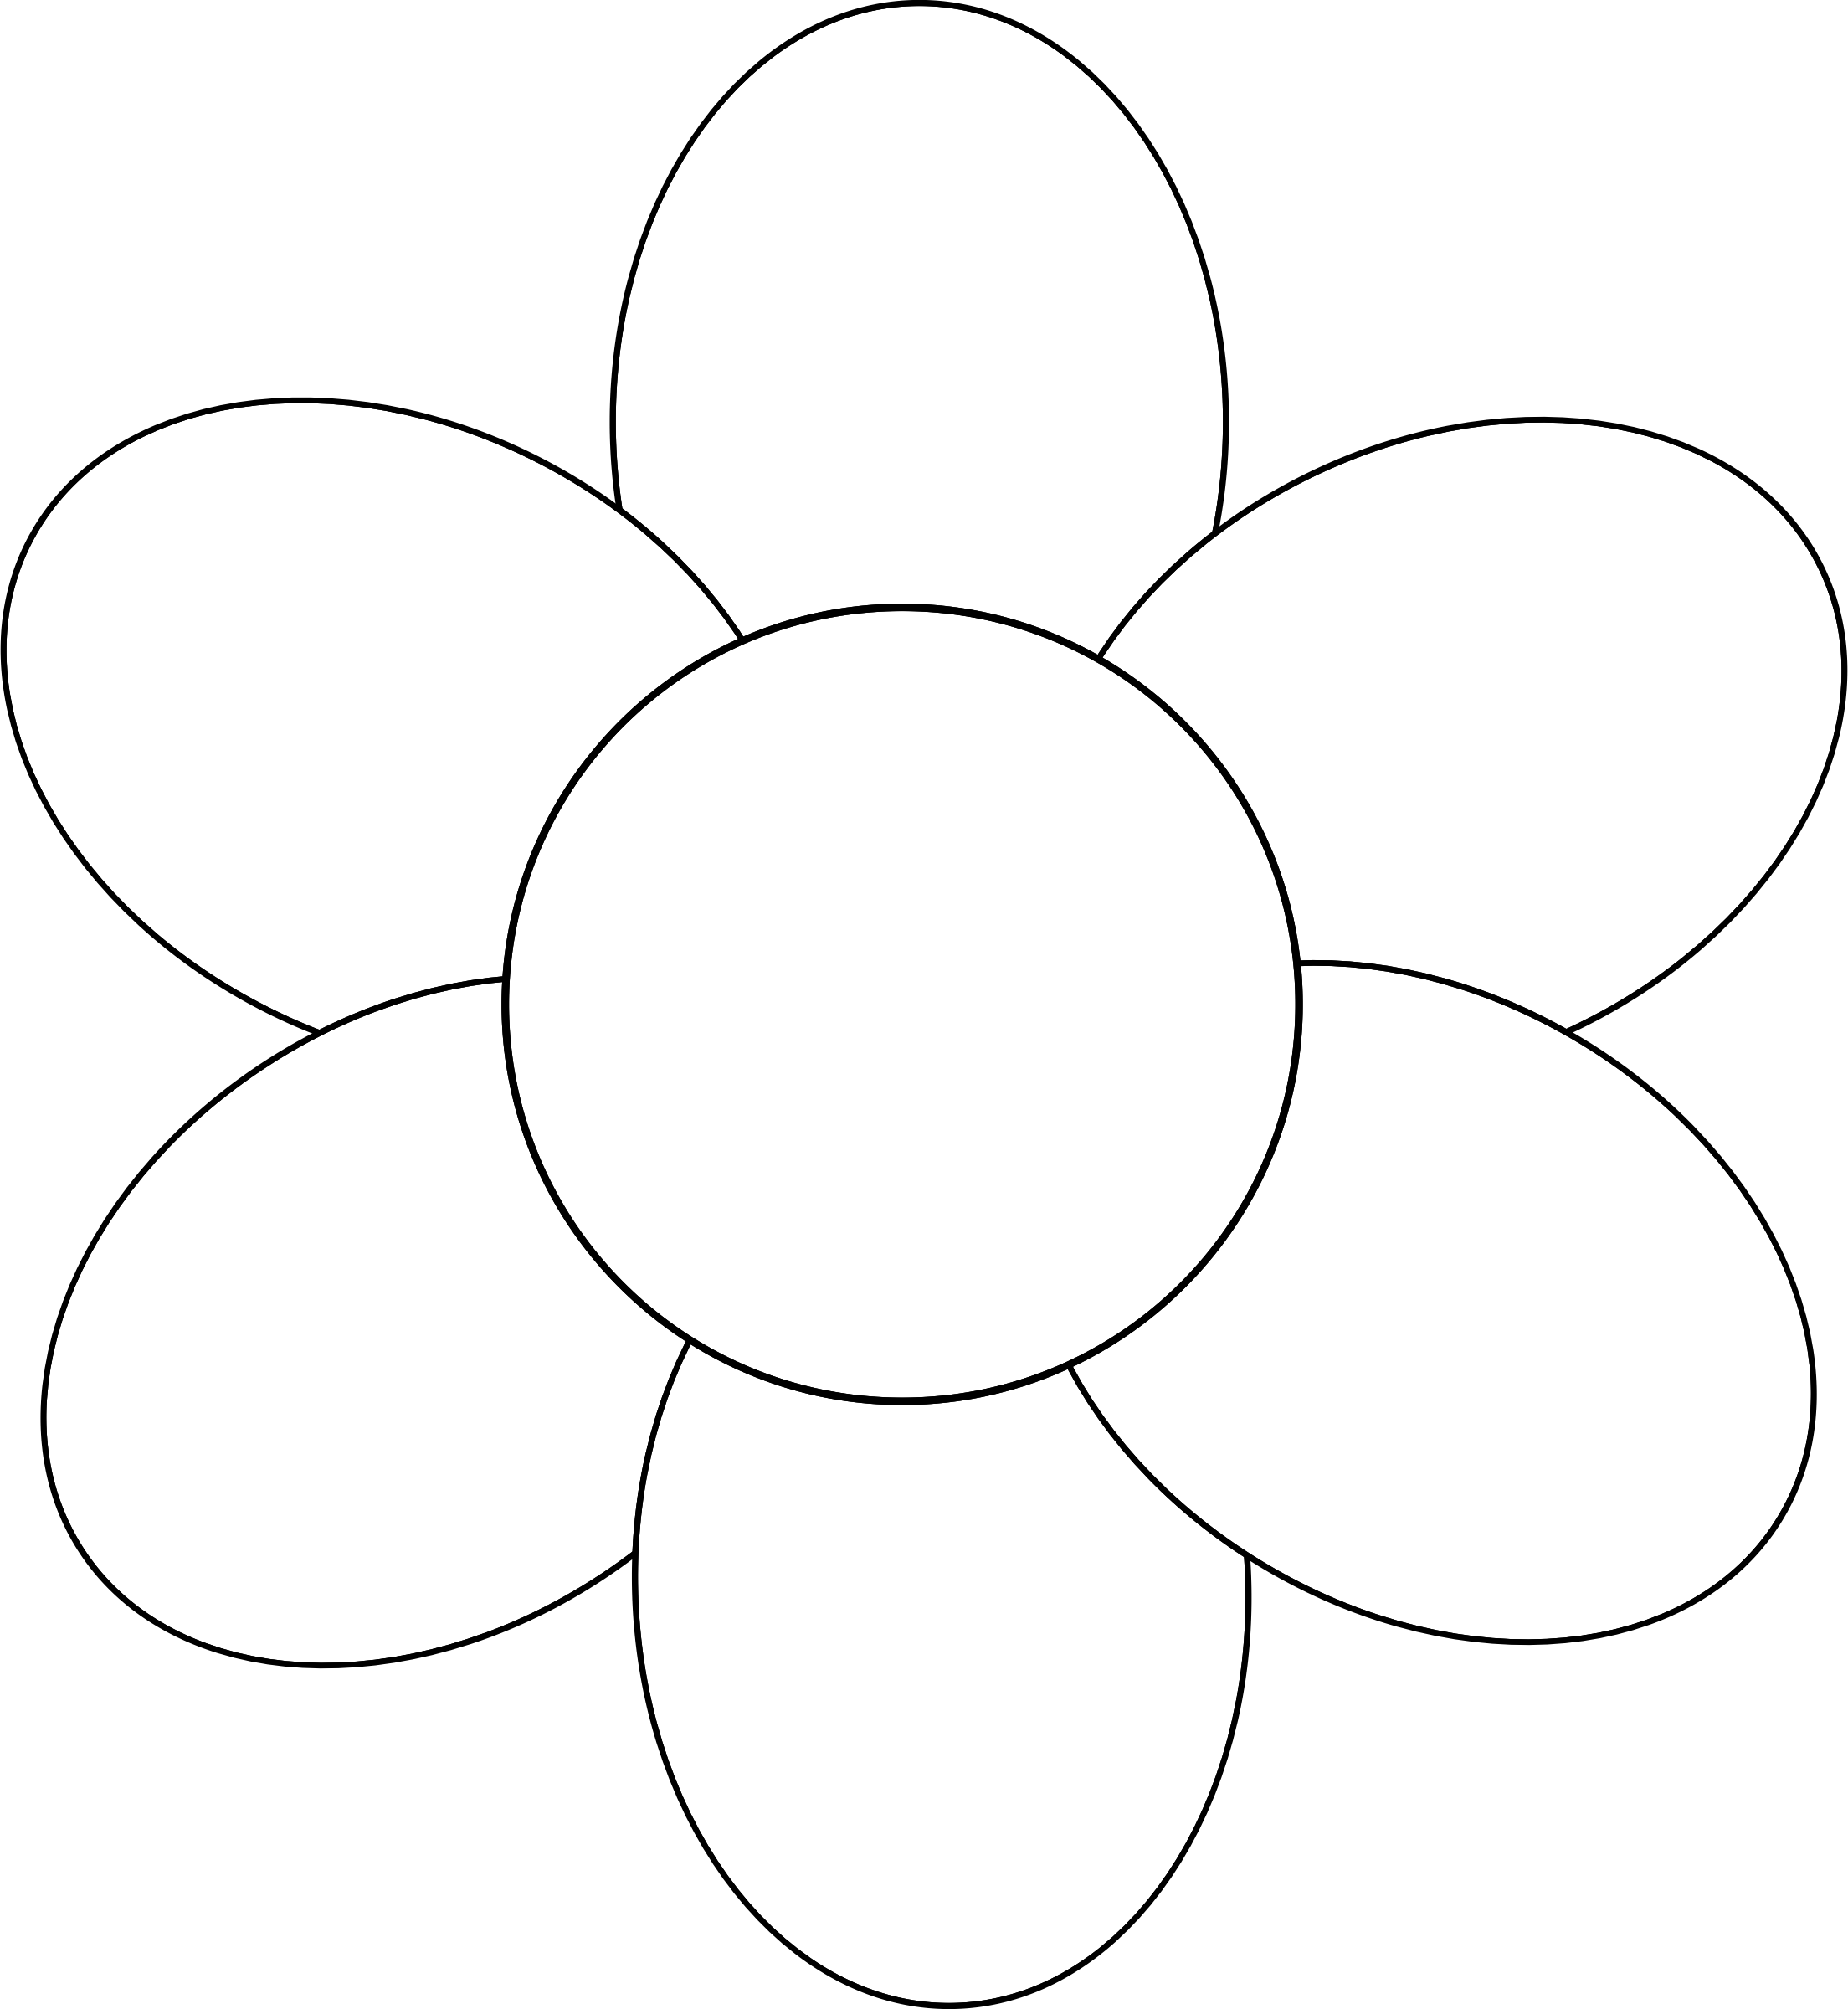 Clipart - Flower six petals black outline